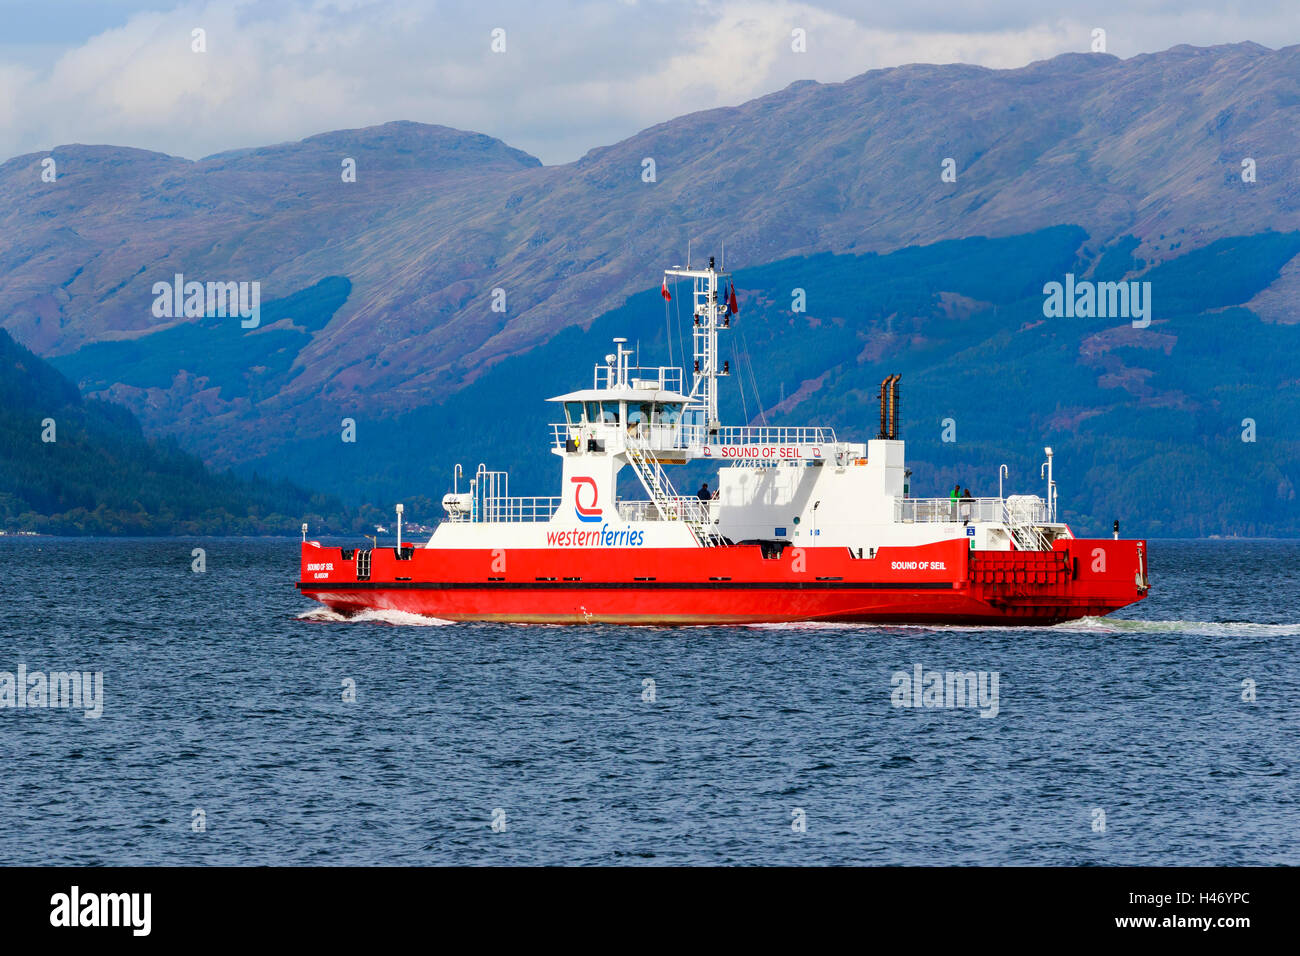 Suono di Siel, Western Ferries, traghetto per auto vela da Gourock a Dunoon sul Firth of Clyde, Scotland, Regno Unito Foto Stock